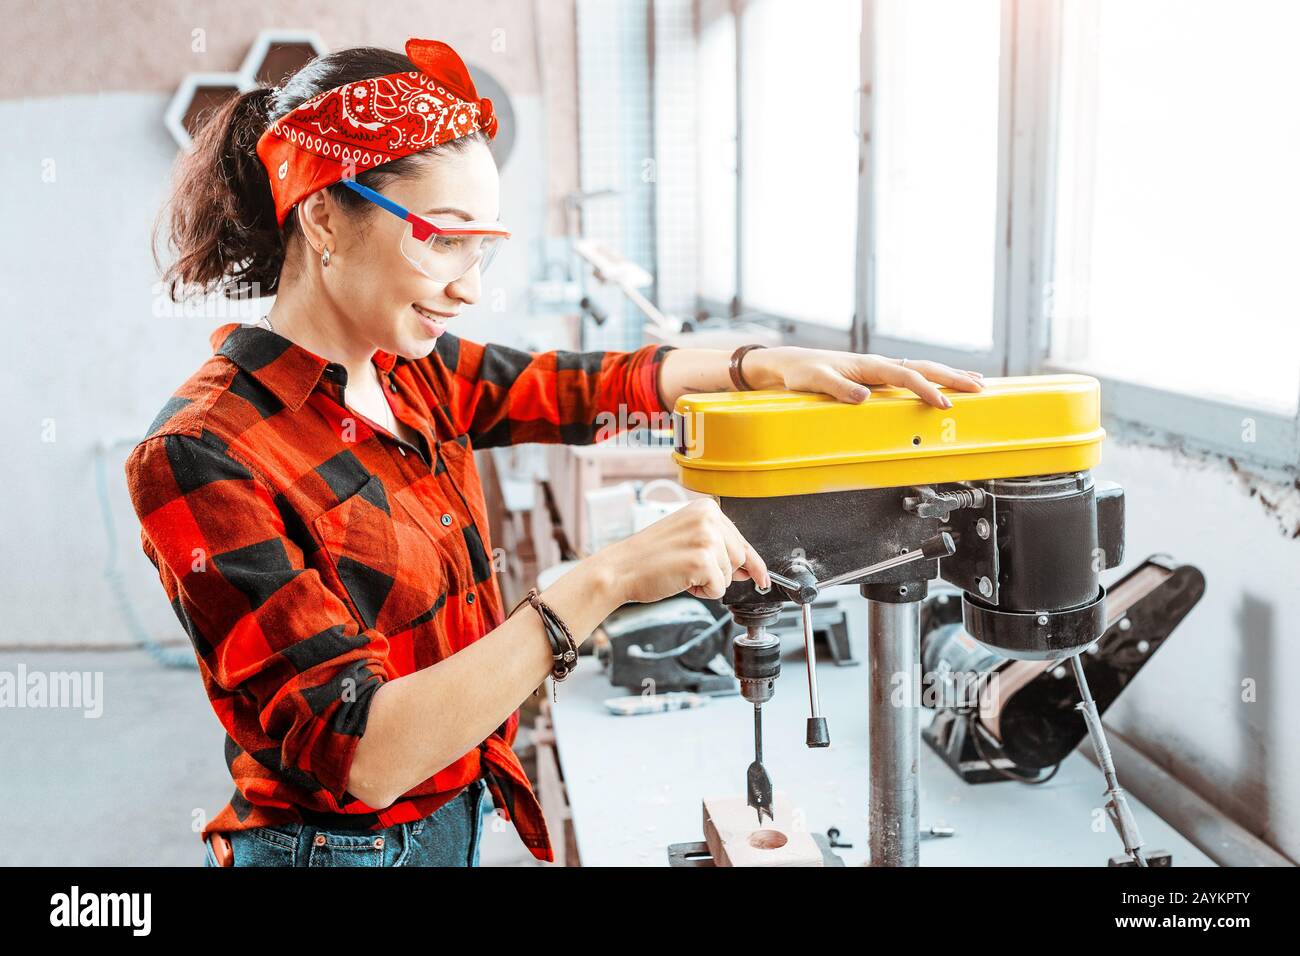 Eine starke und unabhängige Asiatin arbeitet an einer Bohrmaschine in einer Fabrik oder Werkstatt. Konzept mit blauem Kragen Stockfoto